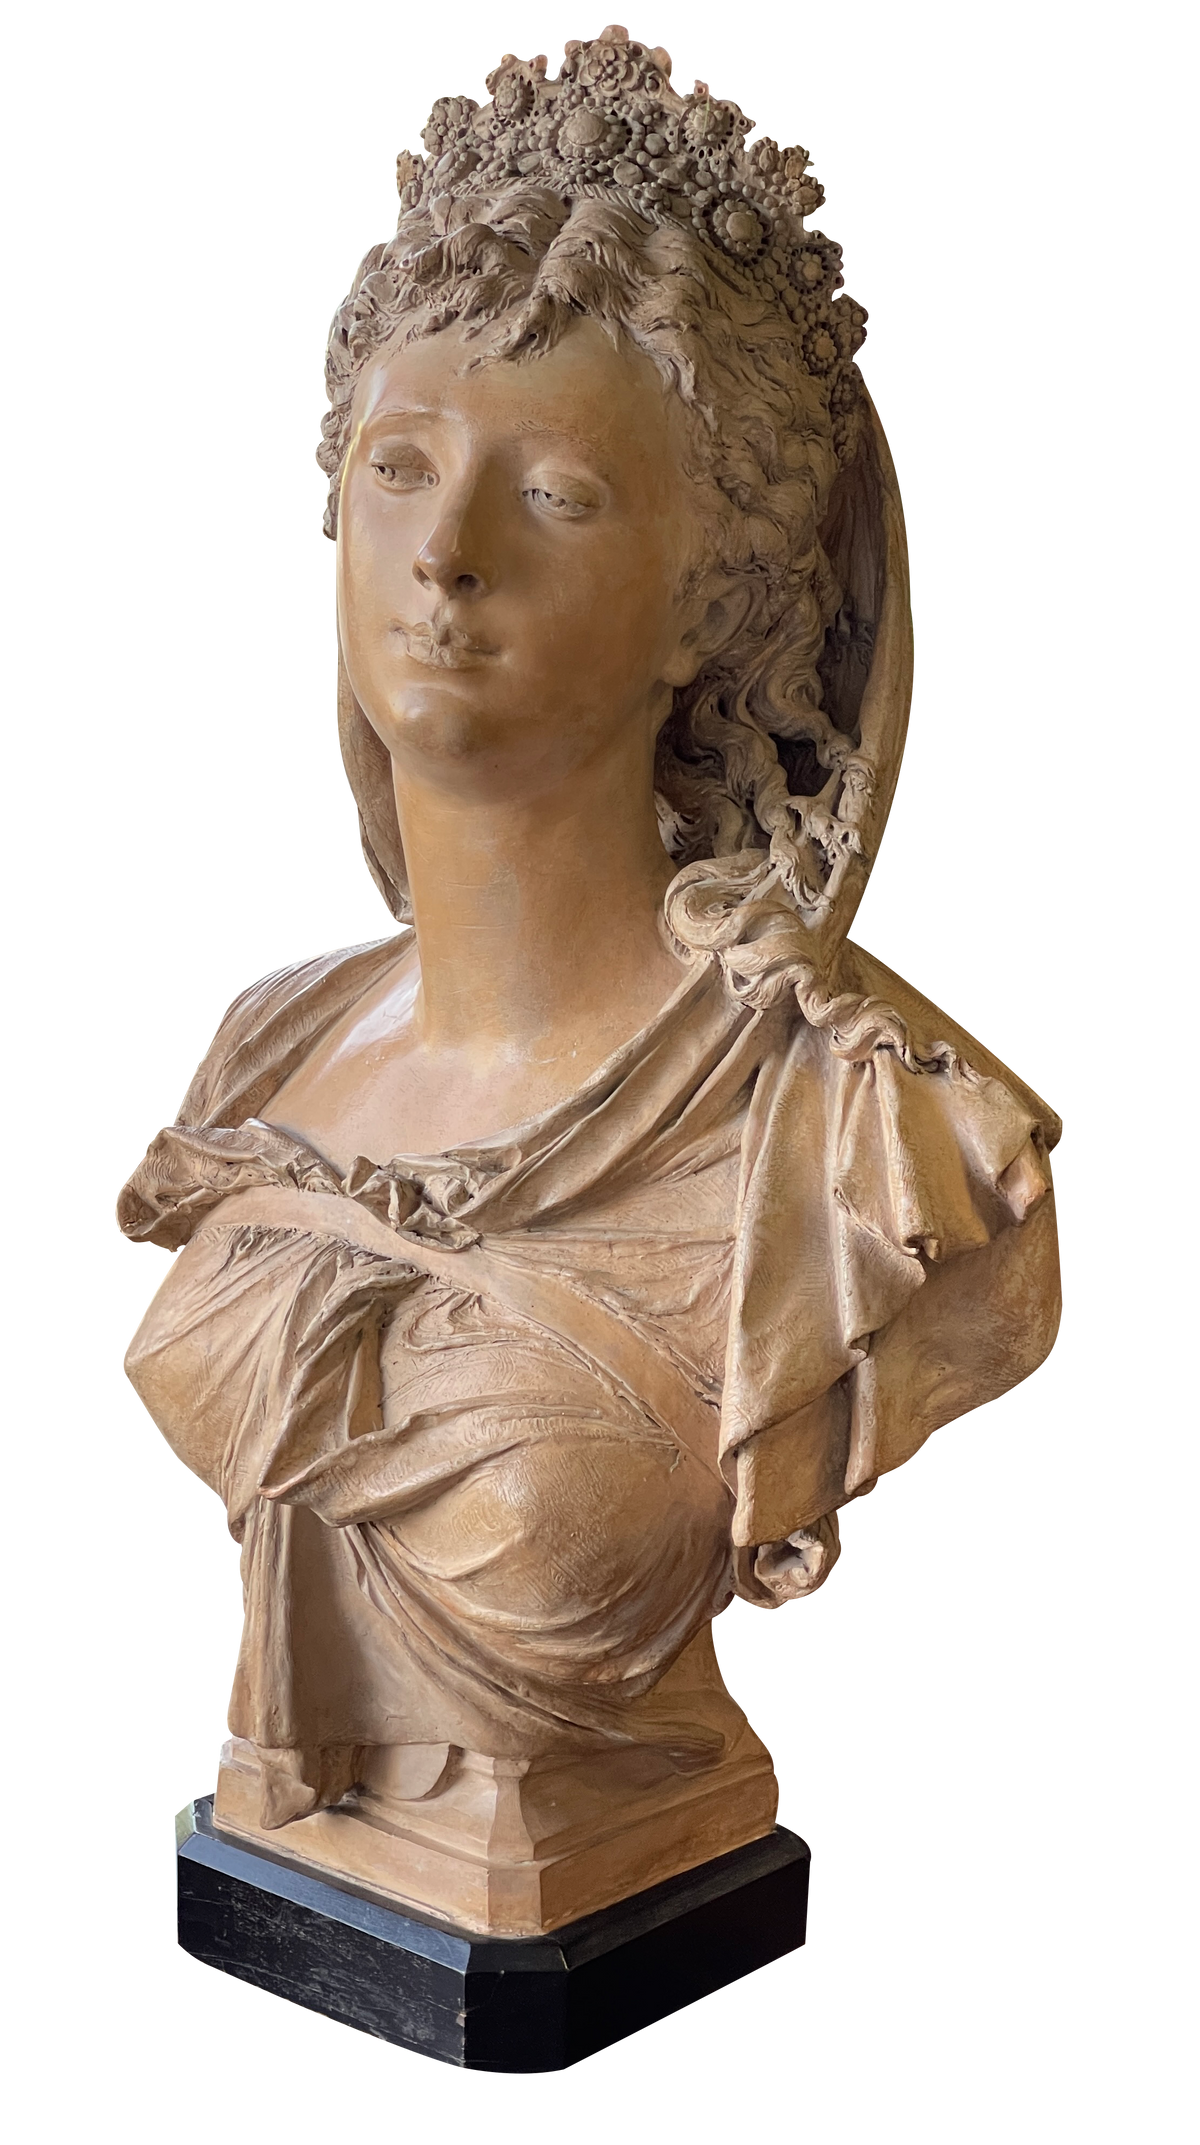 Stunning Albert-Ernest Carrier-Belleuse Bust of a woman, terra cotta sculpture